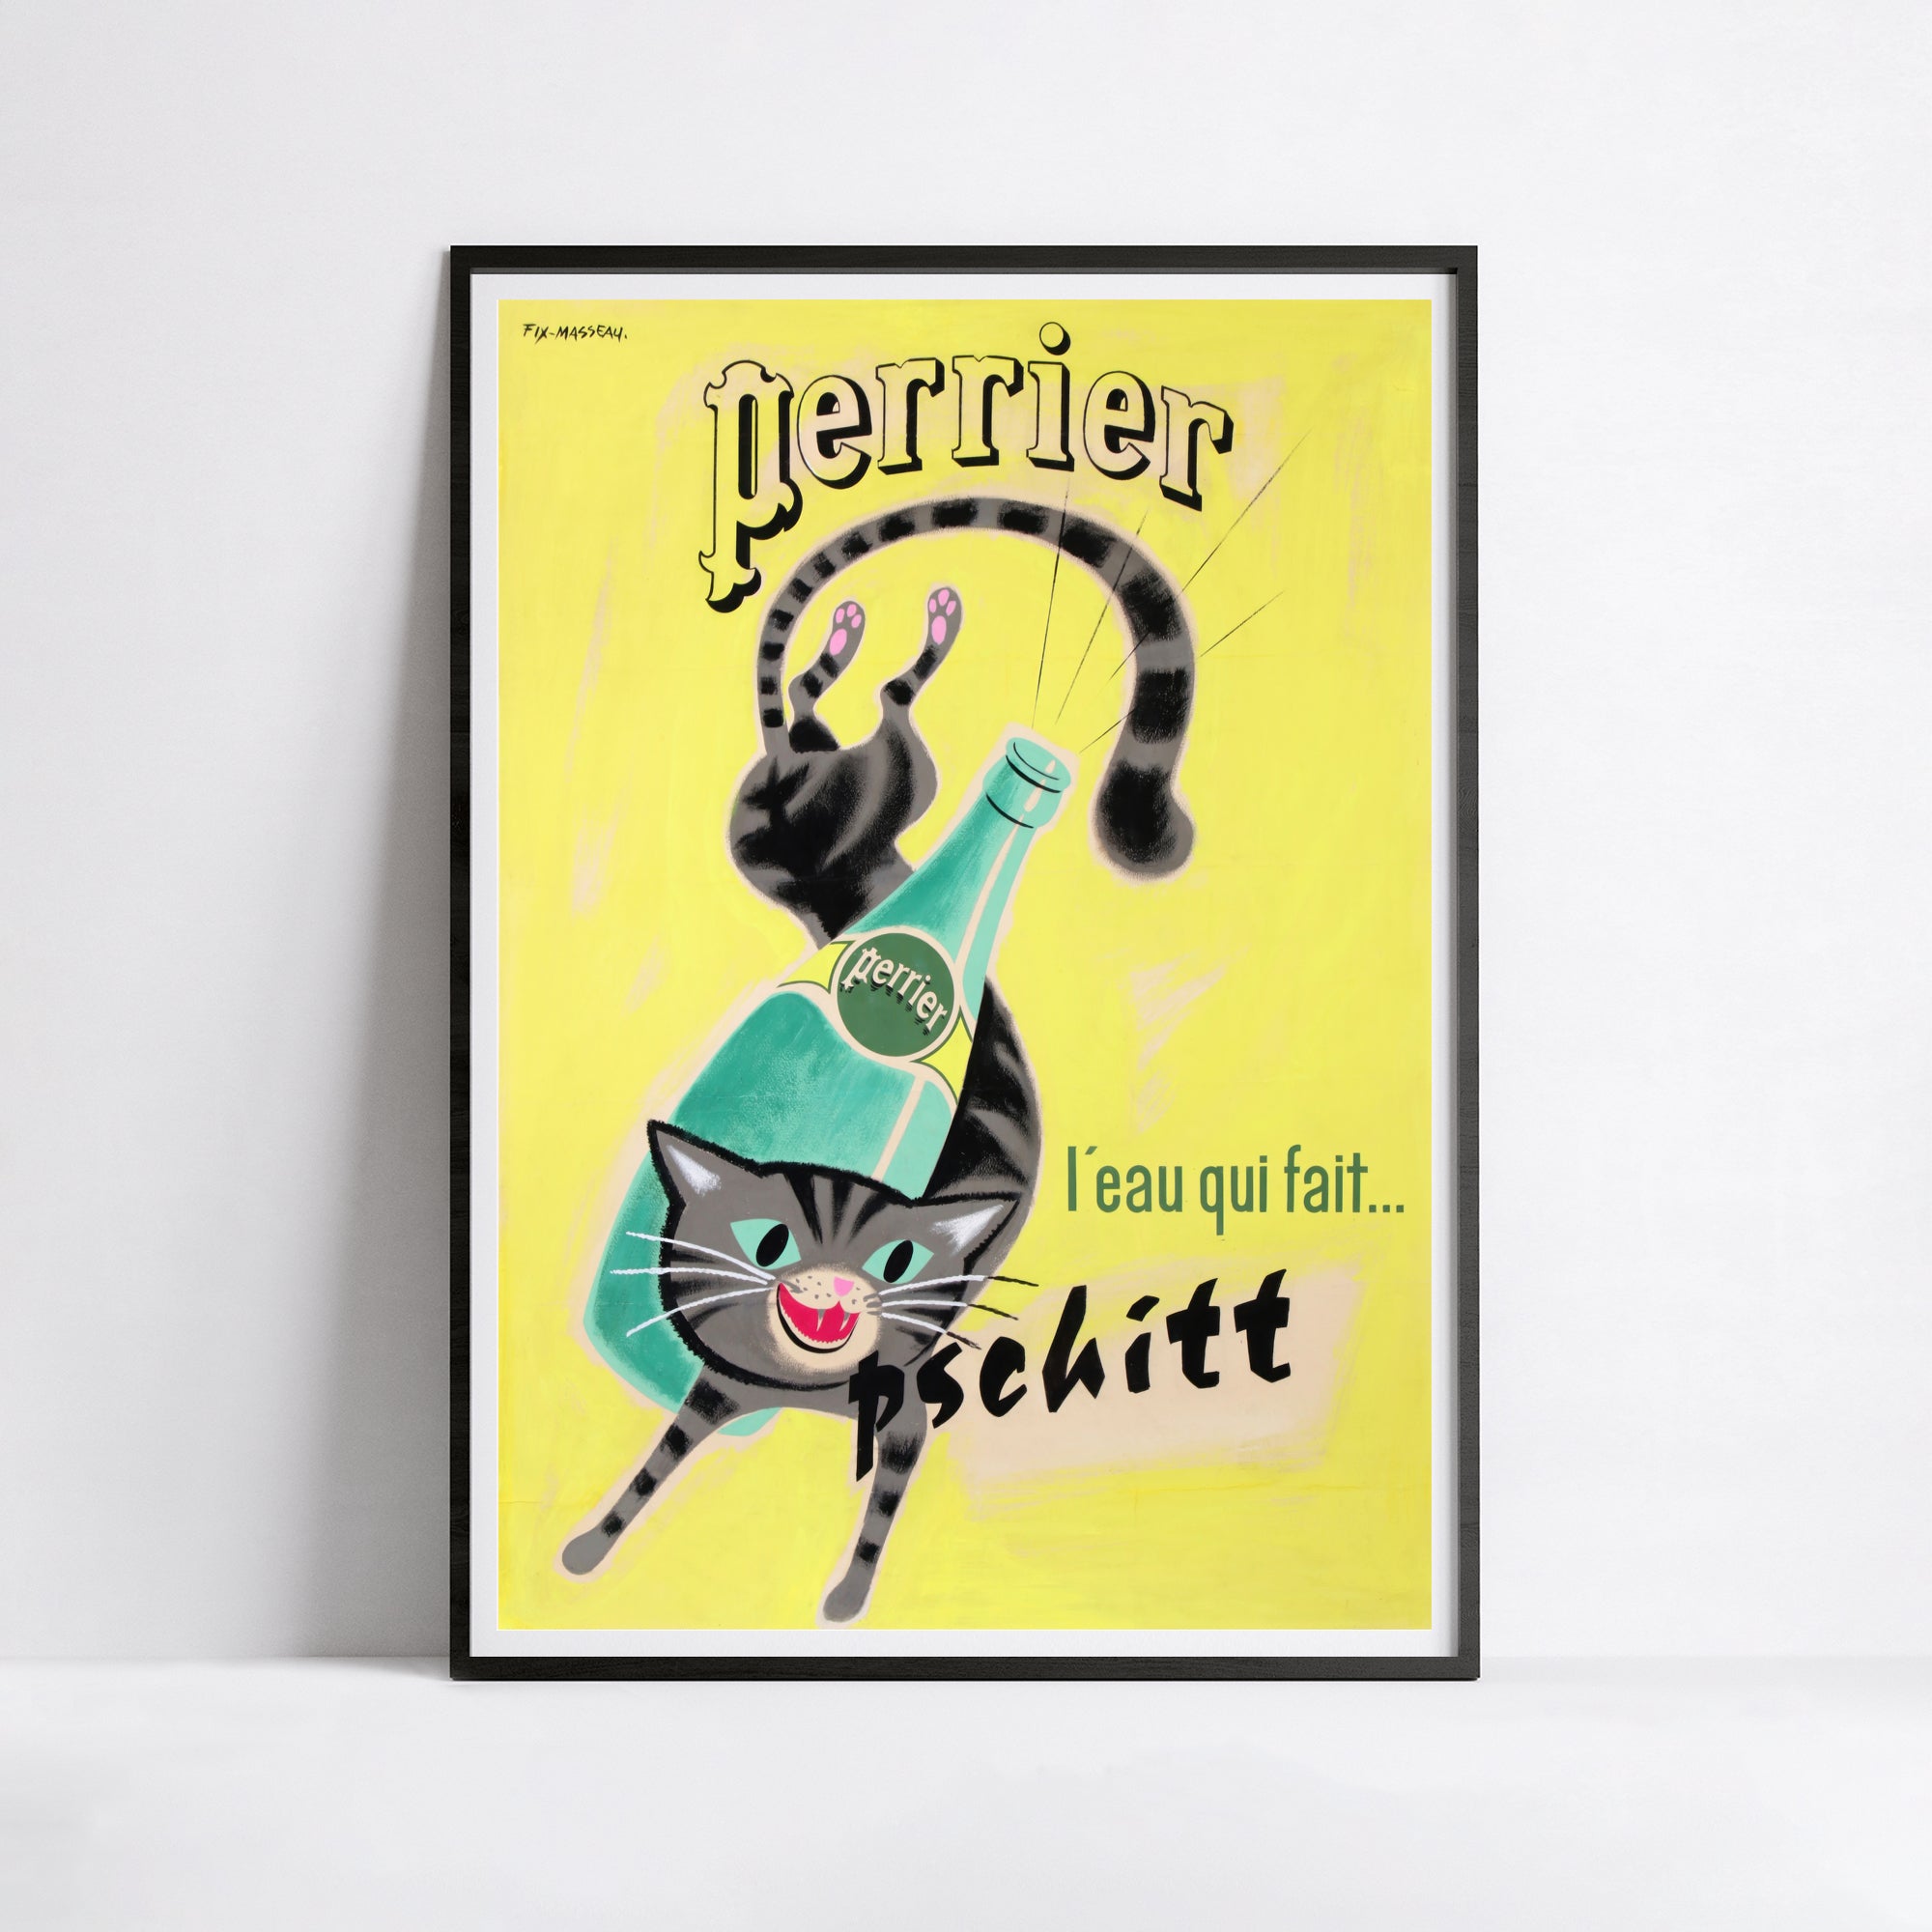 Affiche cuisine vintage "Perrier, l'eau qui fait pschitt" - FIX MASSEAU - Haute Définition - papier mat 230gr/m²